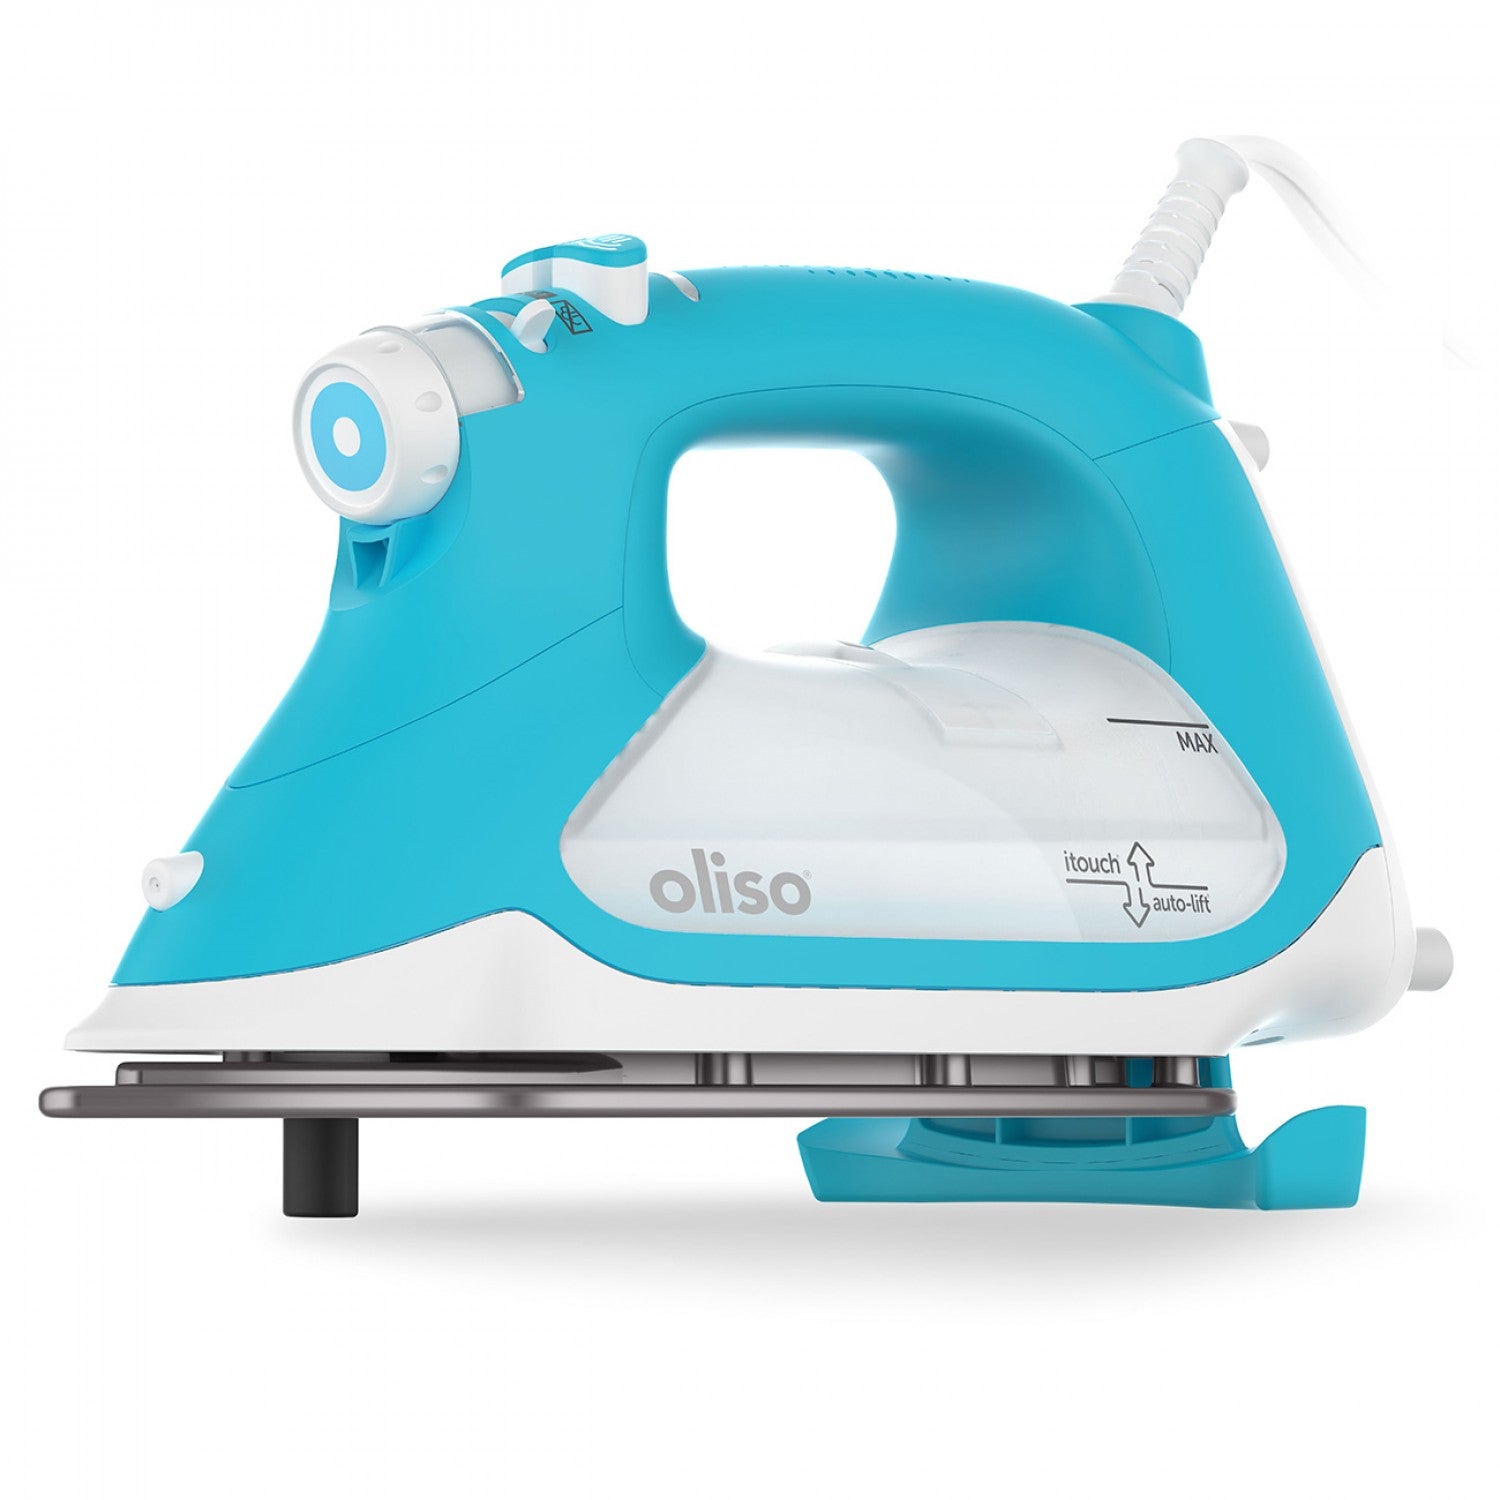 Oliso TG1600 Pro Plus Iron - Turquoise